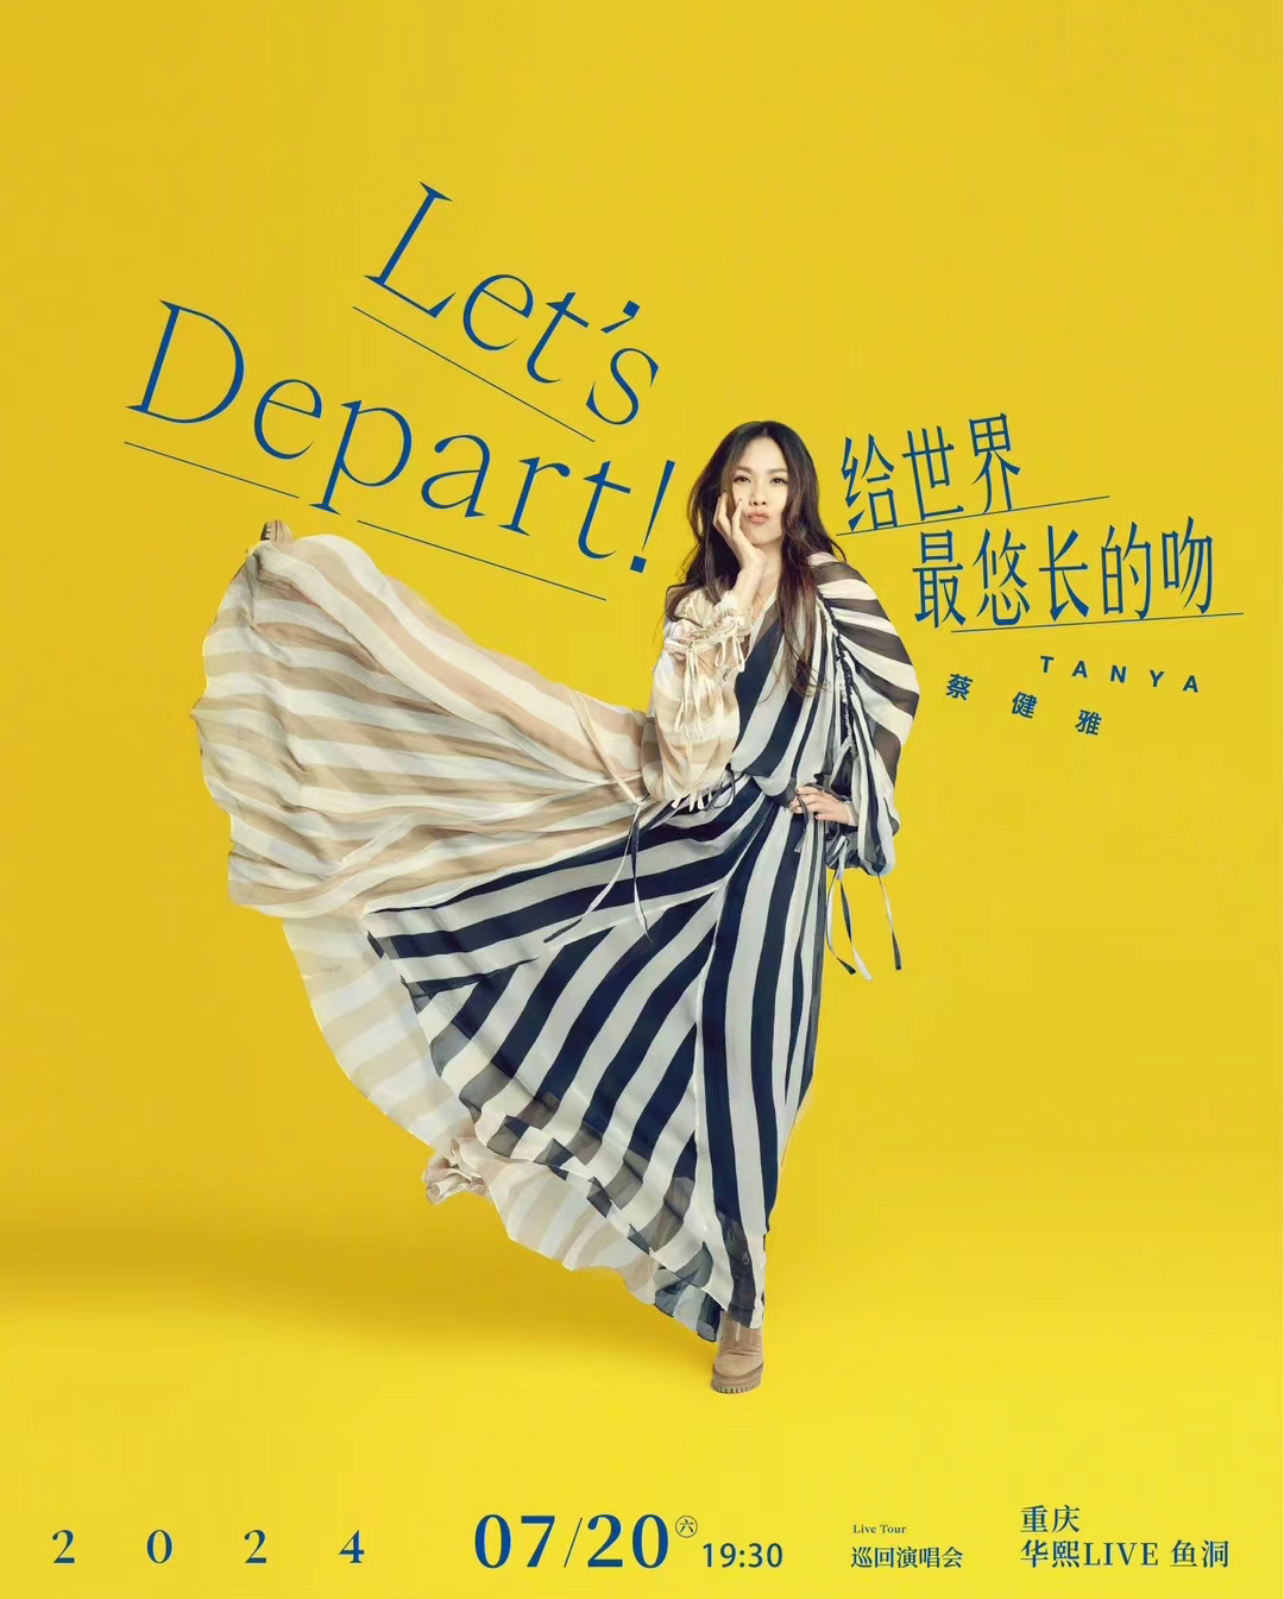 [重庆]蔡健雅“Let’s Depart！ 给世界最悠长的吻”巡回演唱会-重庆站